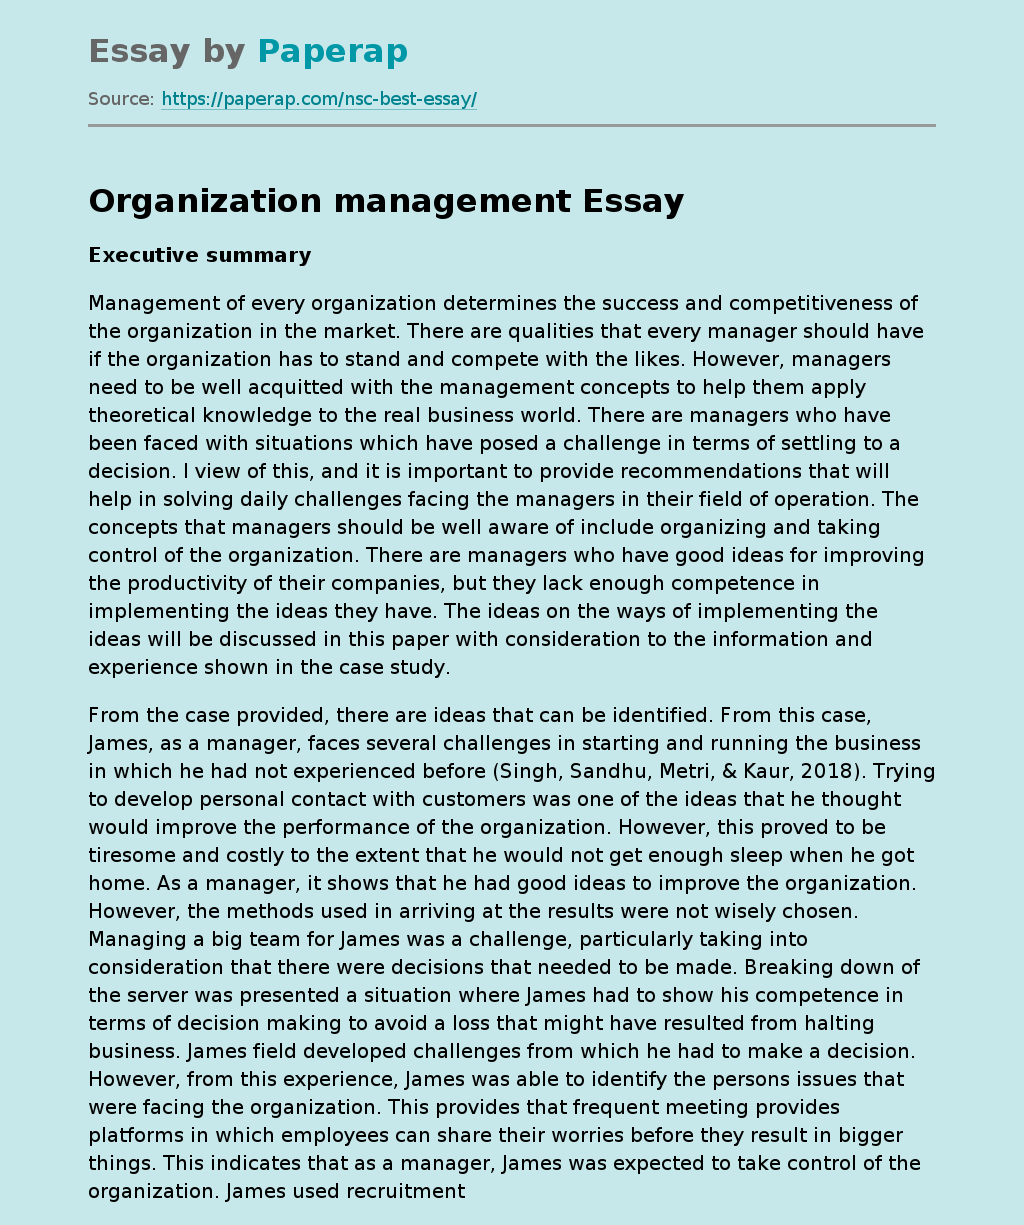 Organization management